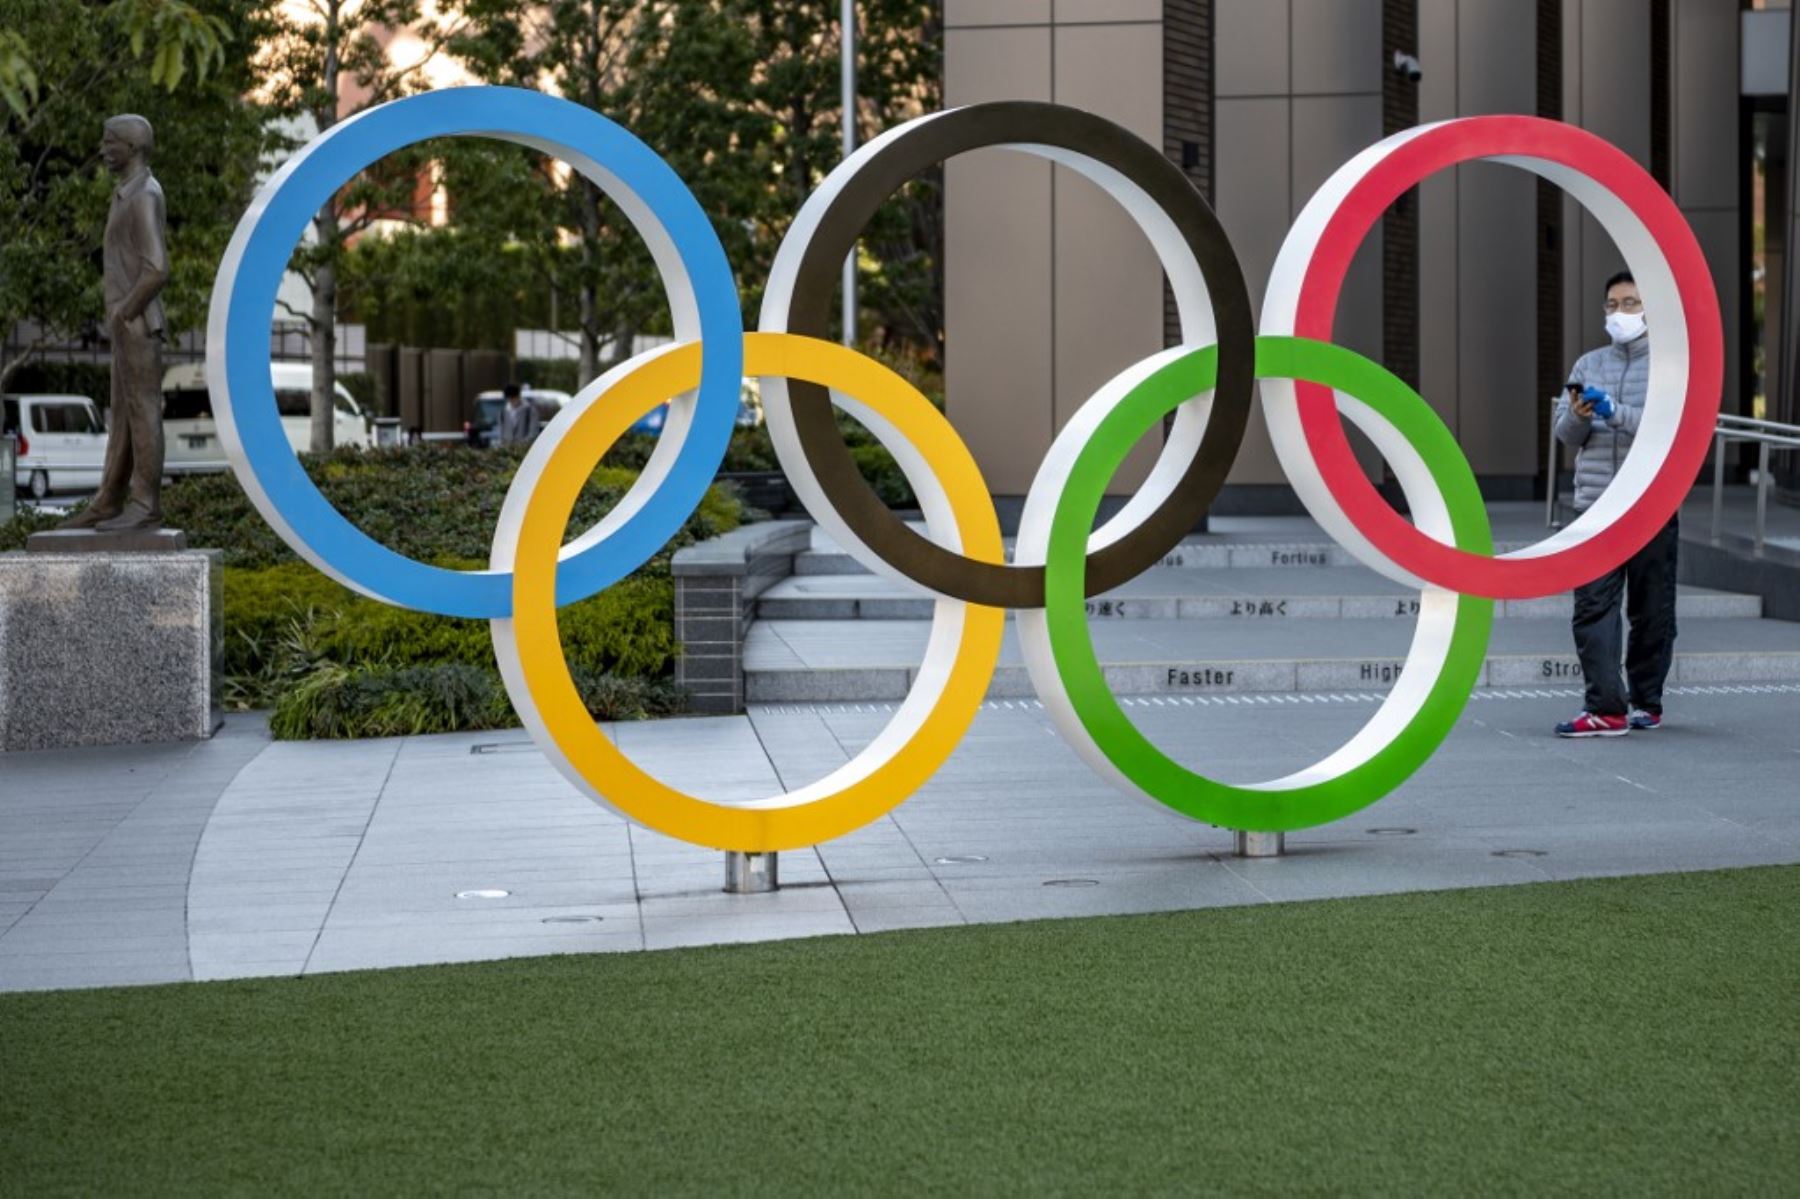 La realización de los Juegos Olímpicos Tokios 2020 generan incertidumbre